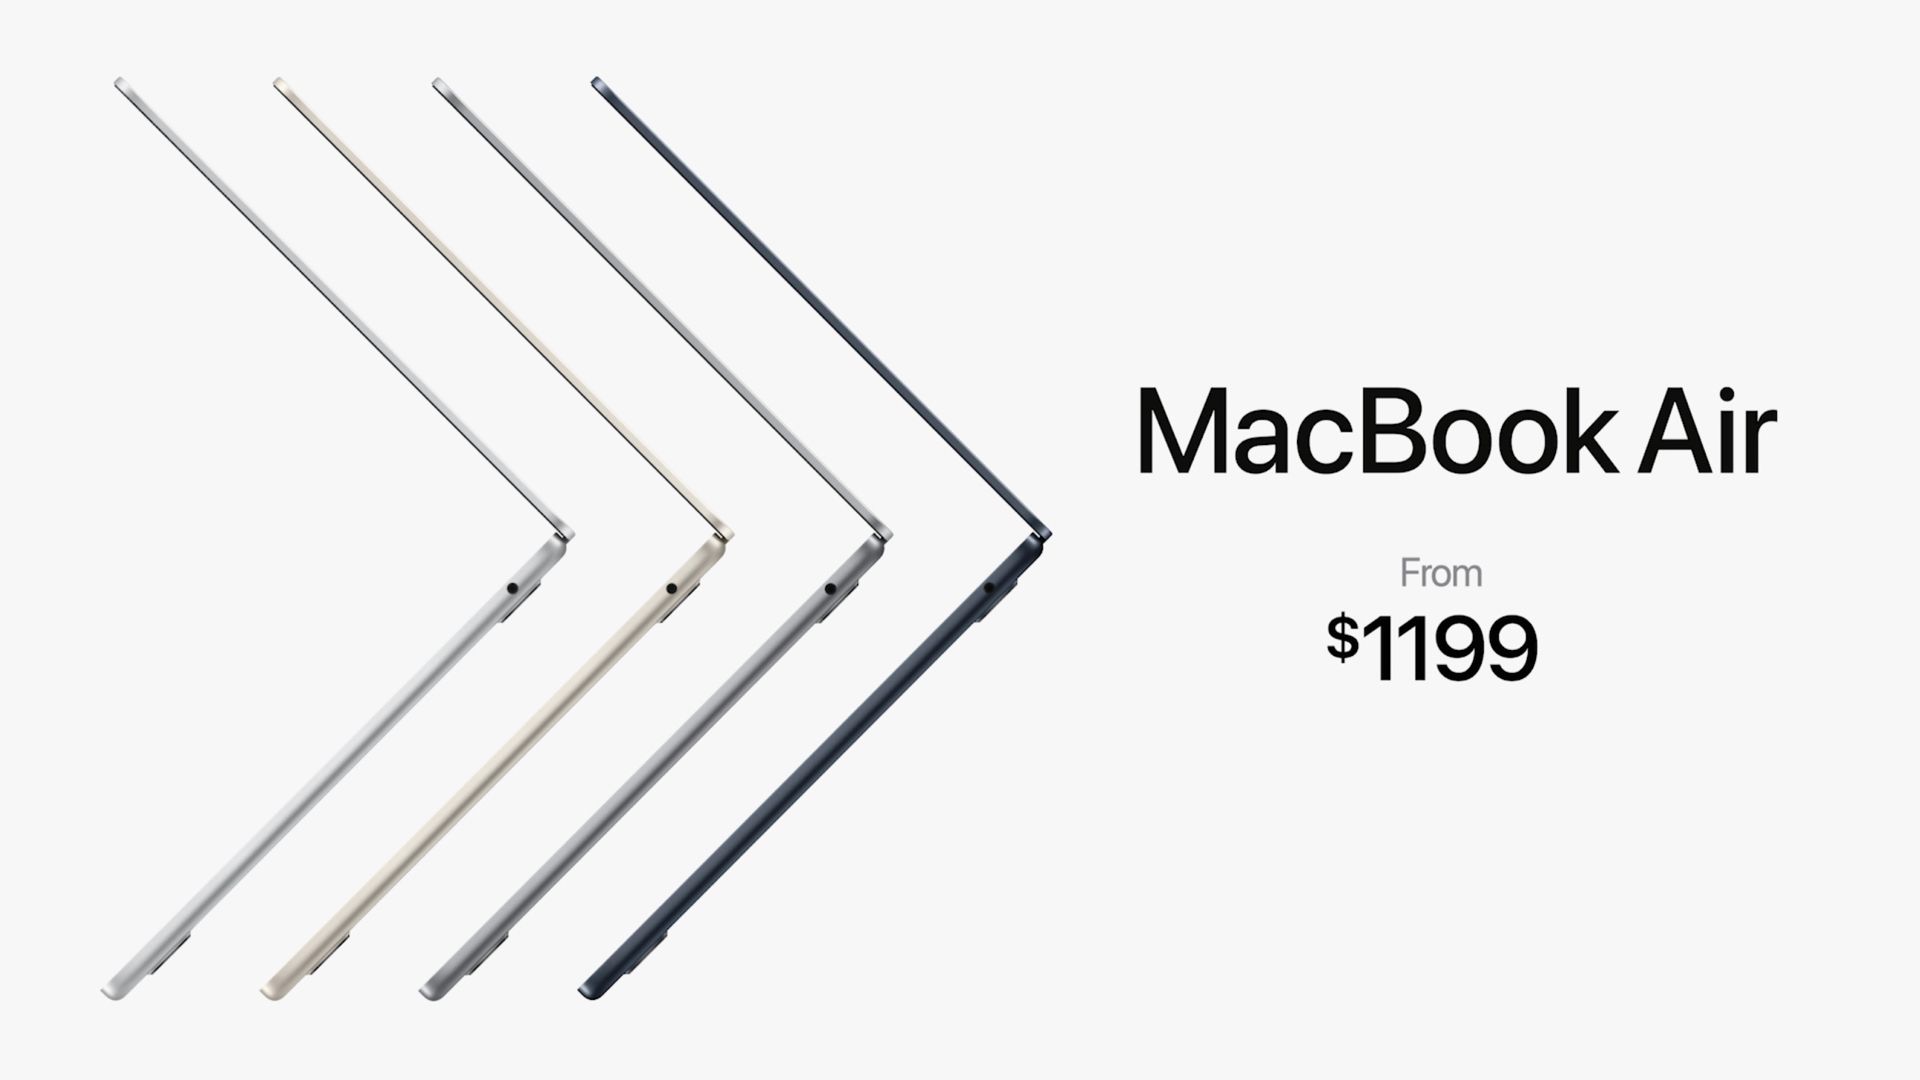 New MacBook Air pricing